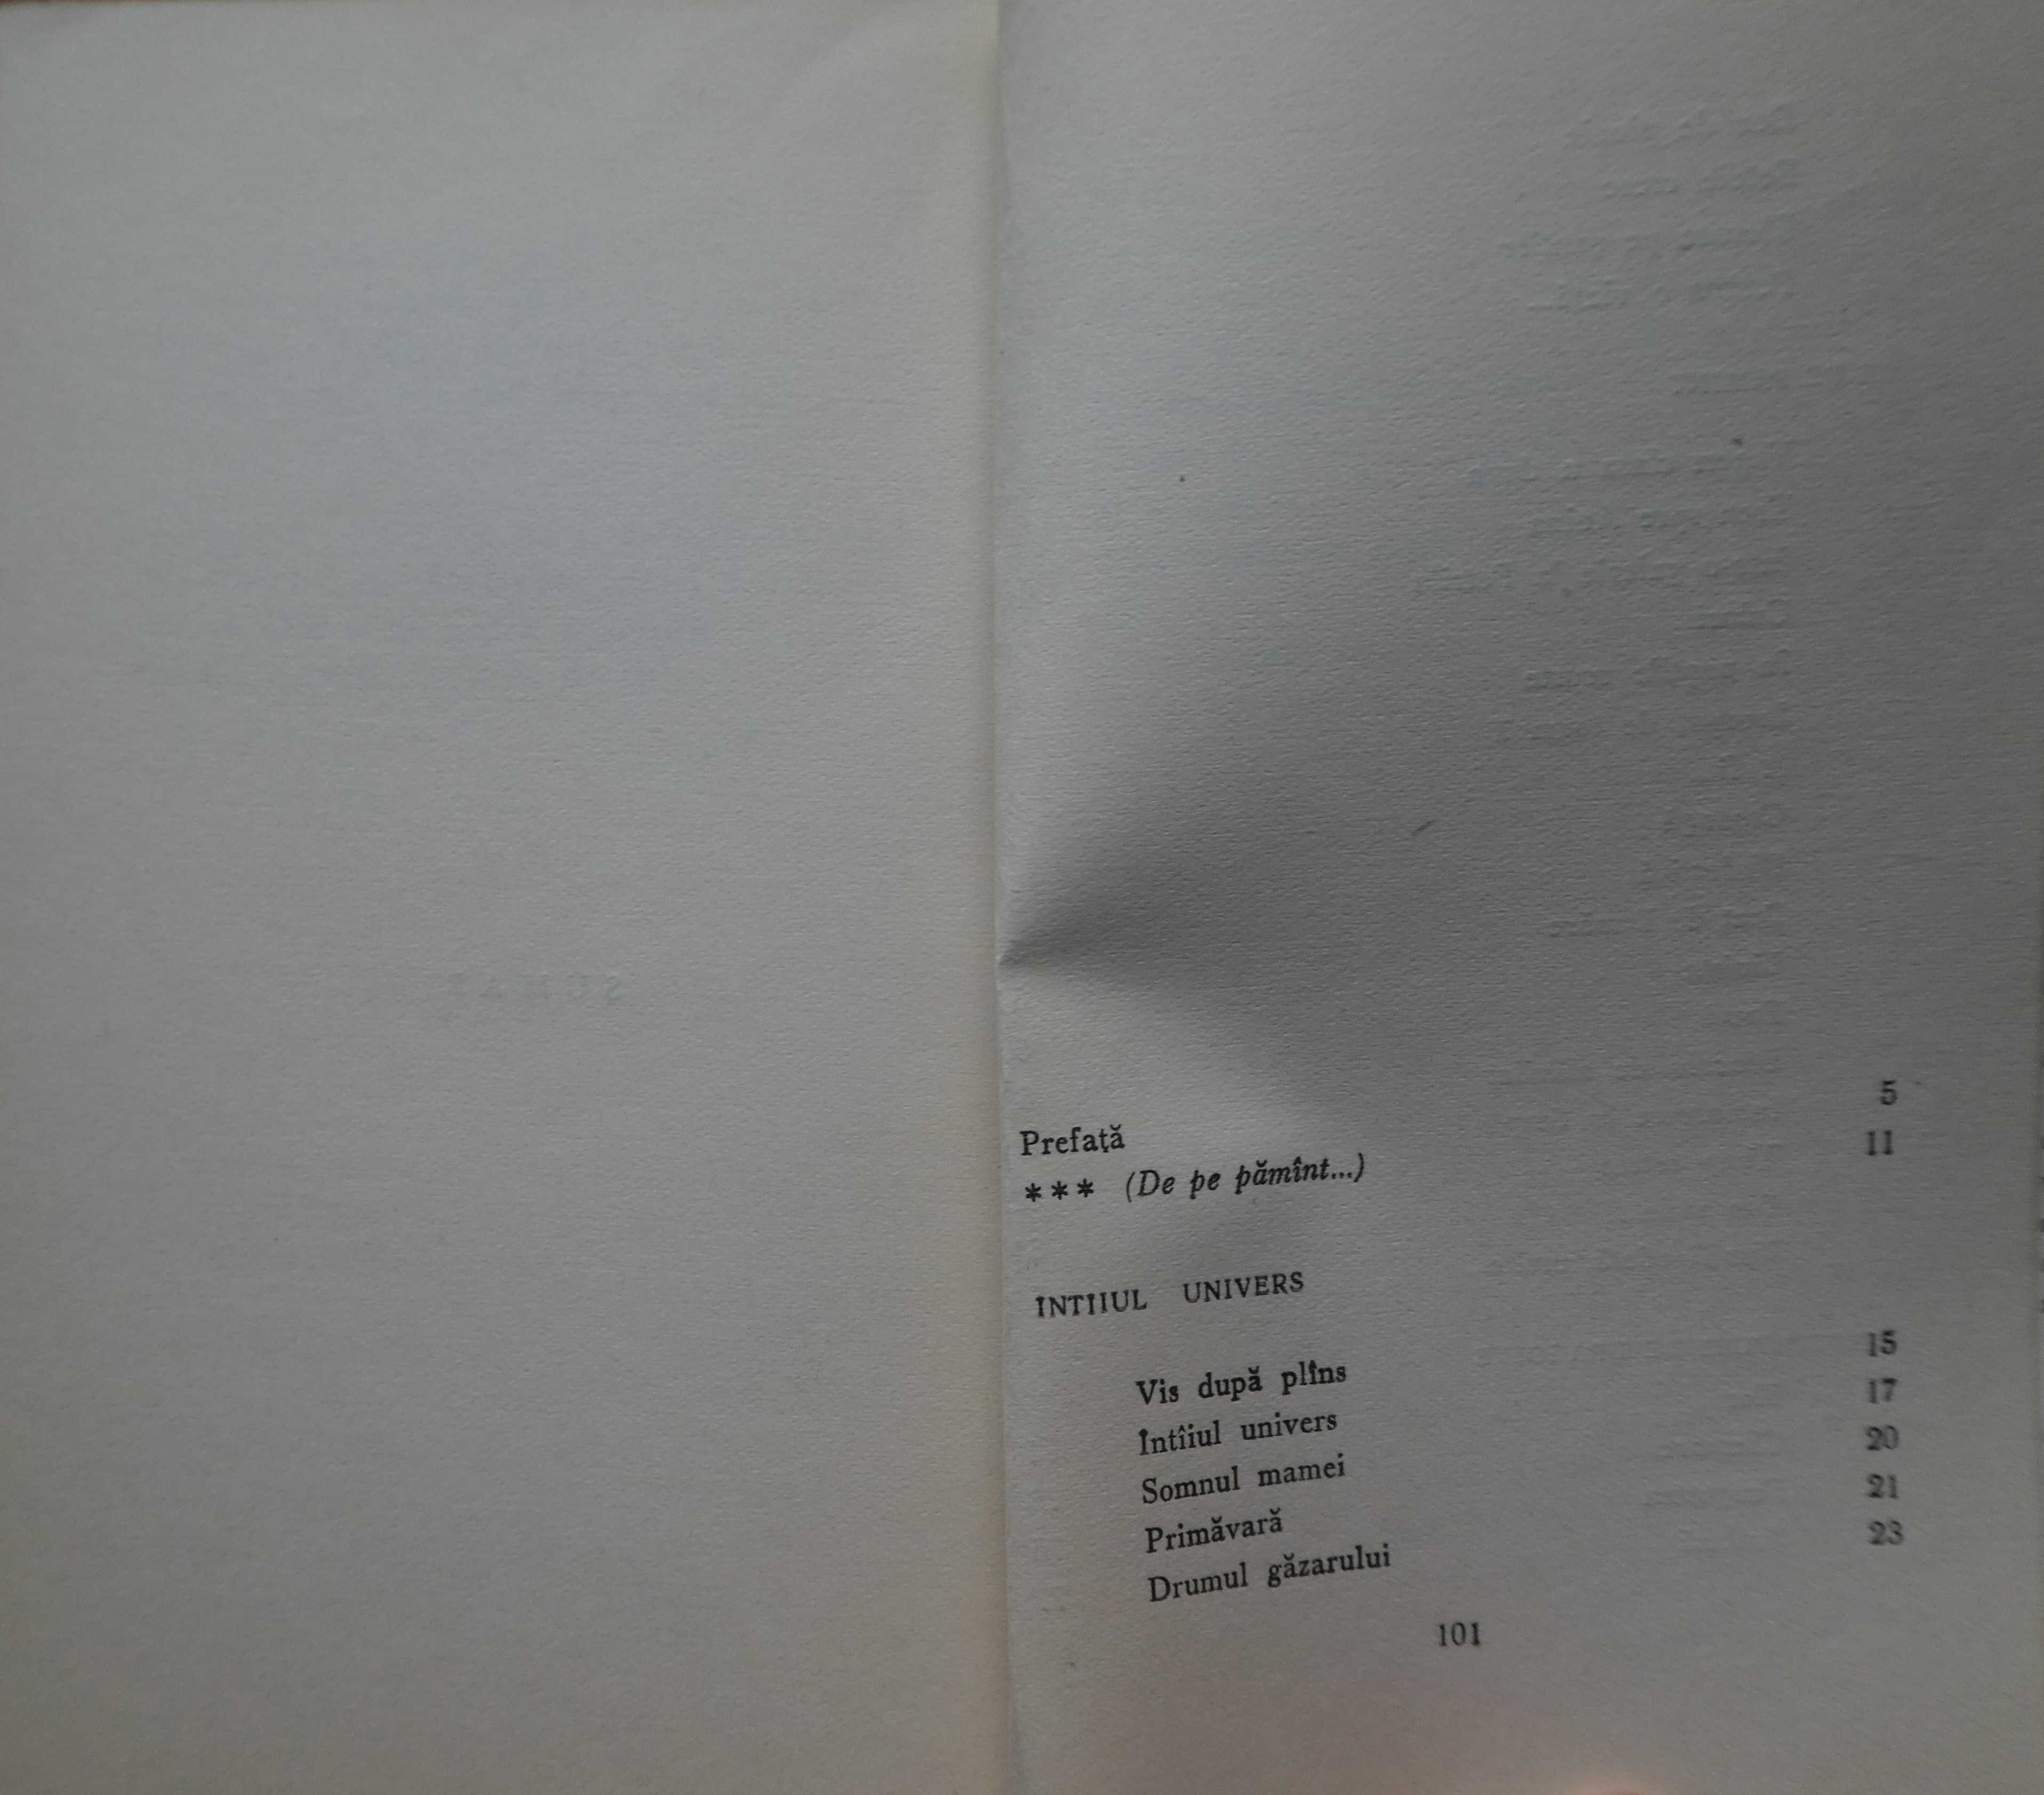 Constanta Buzea , De pe pamant , 1963 ,  cu autograf , volum de debut